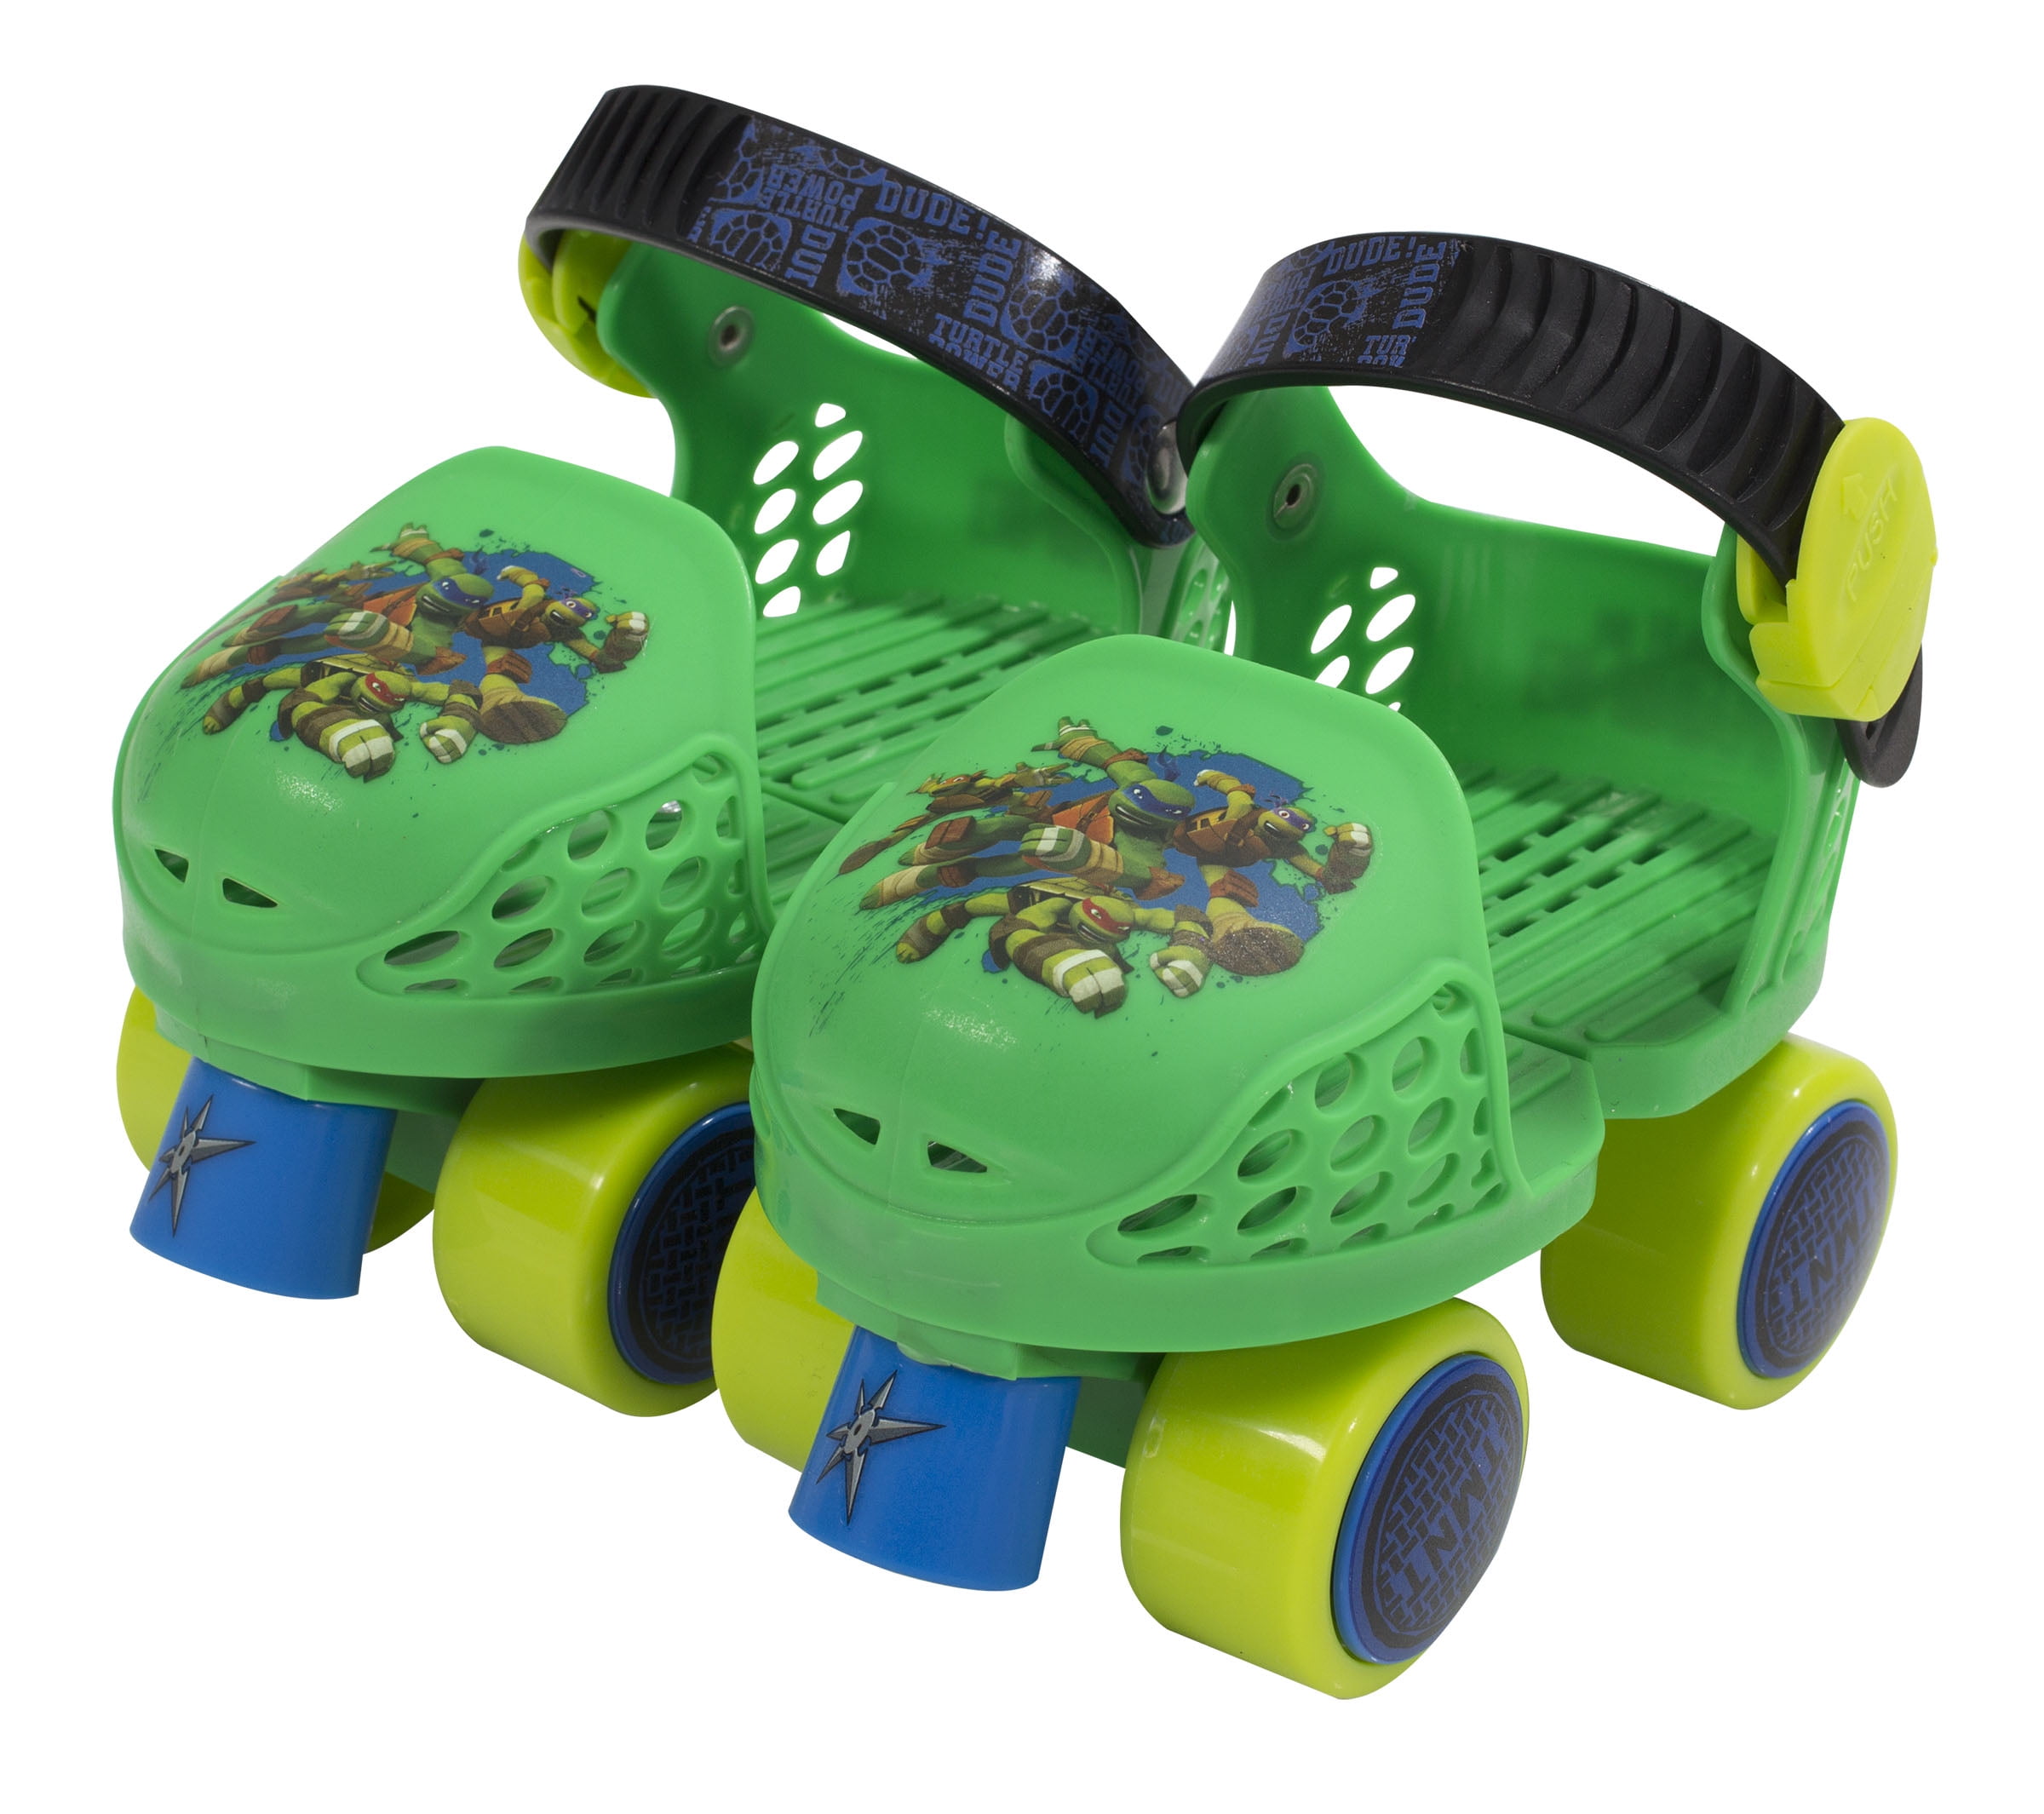 Junior Size 6-12 Green/Blue PlayWheels Teenage Mutant Ninja Turtles Roller Skates with Knee Pads